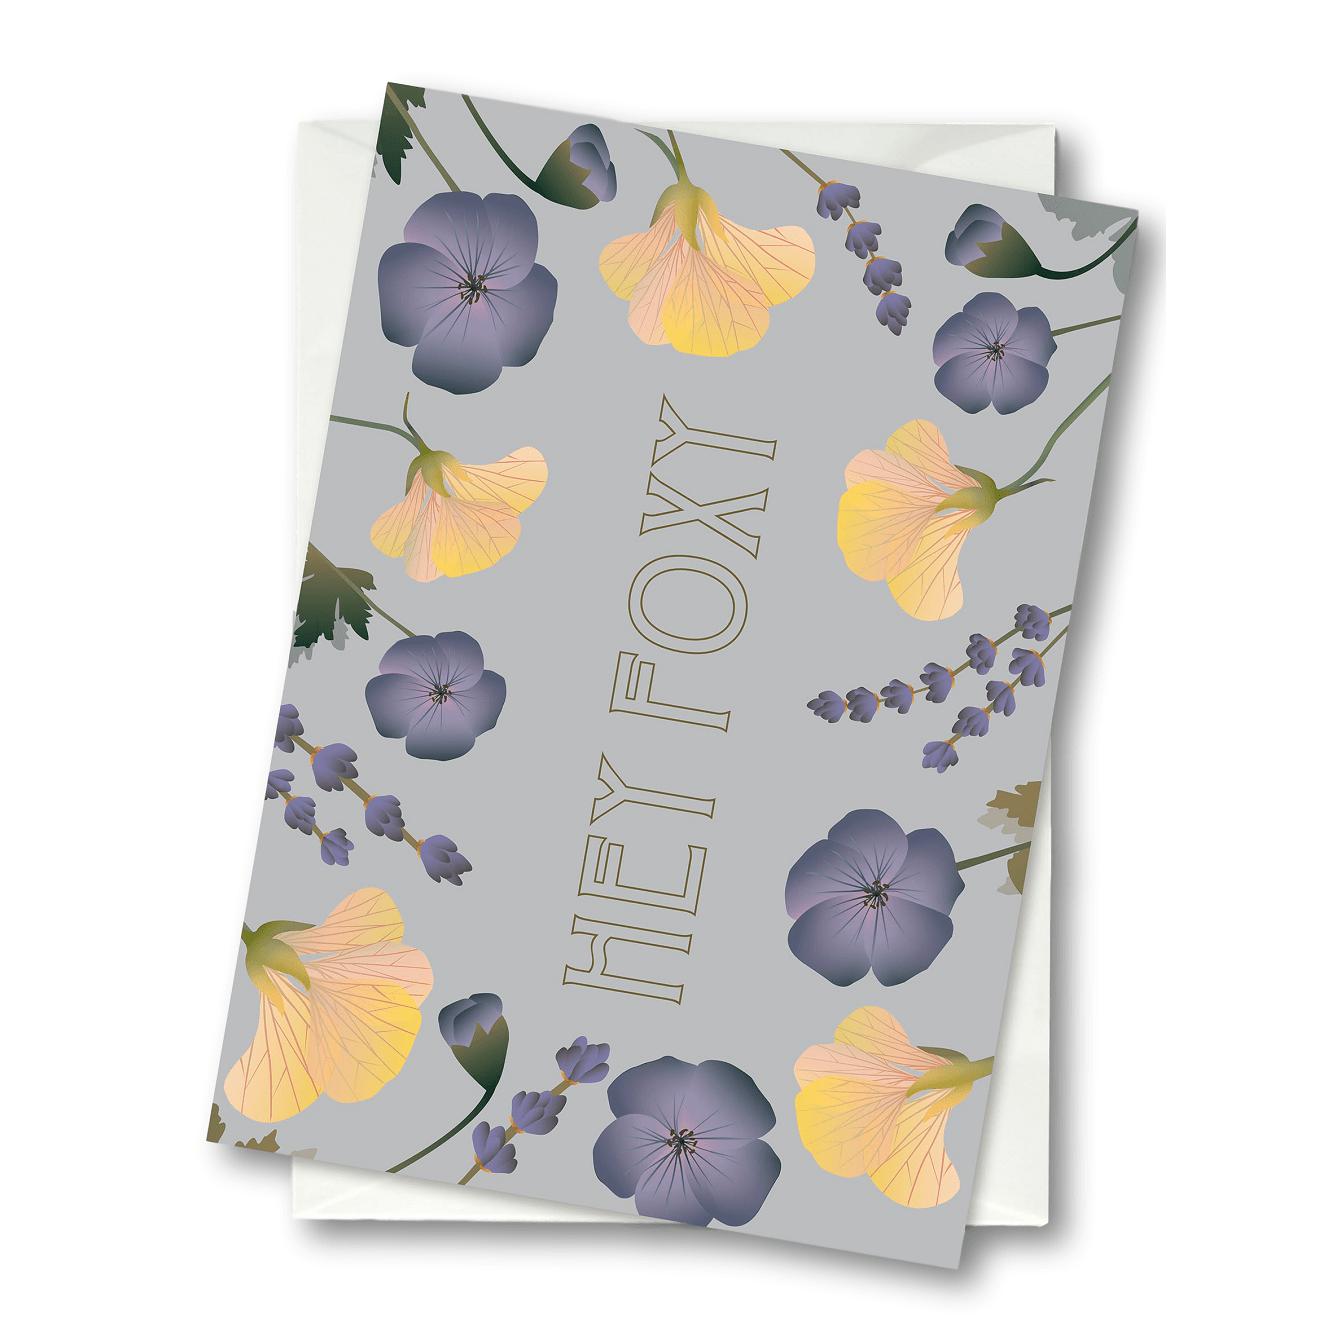 Vissevasse Hey Foxy Flower Bouquet Tarjeta de felicitación, 10,5x15 cm